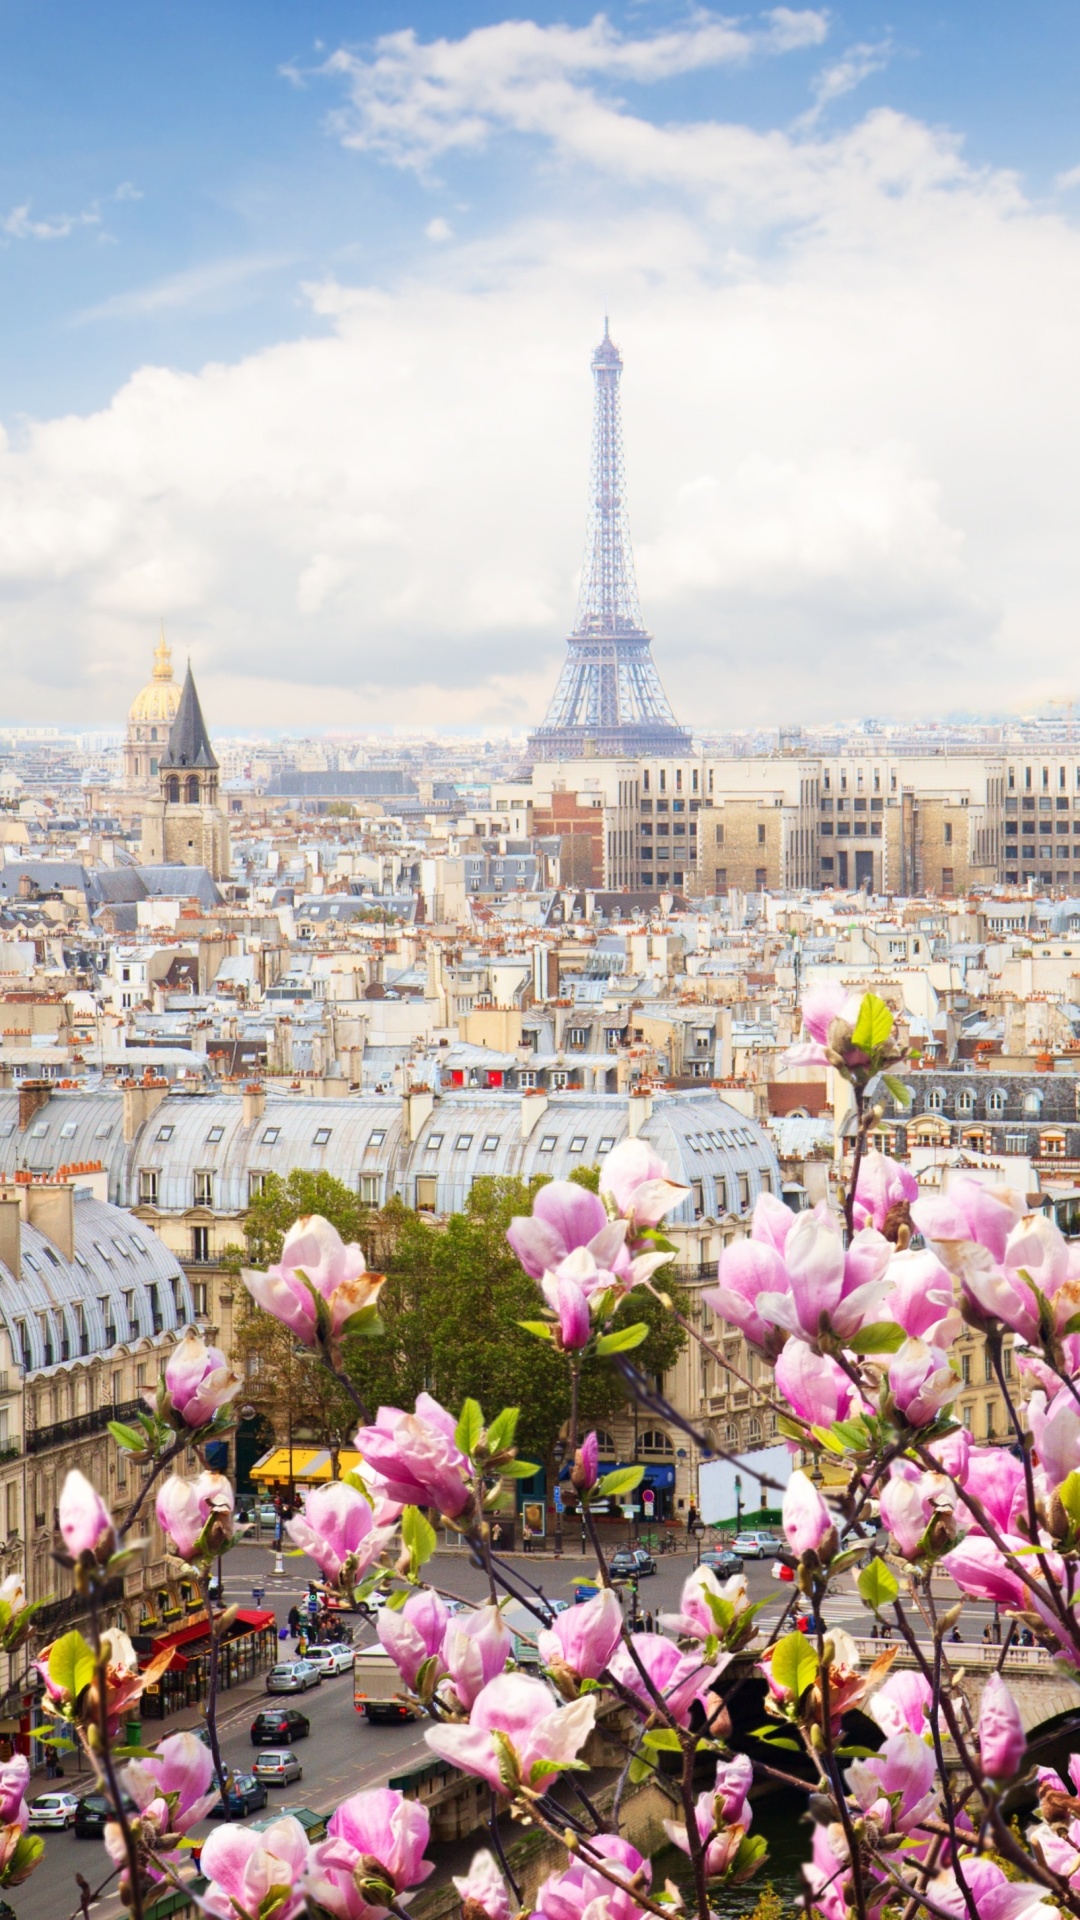 Обои Paris Sakura Location for Instagram 1080x1920